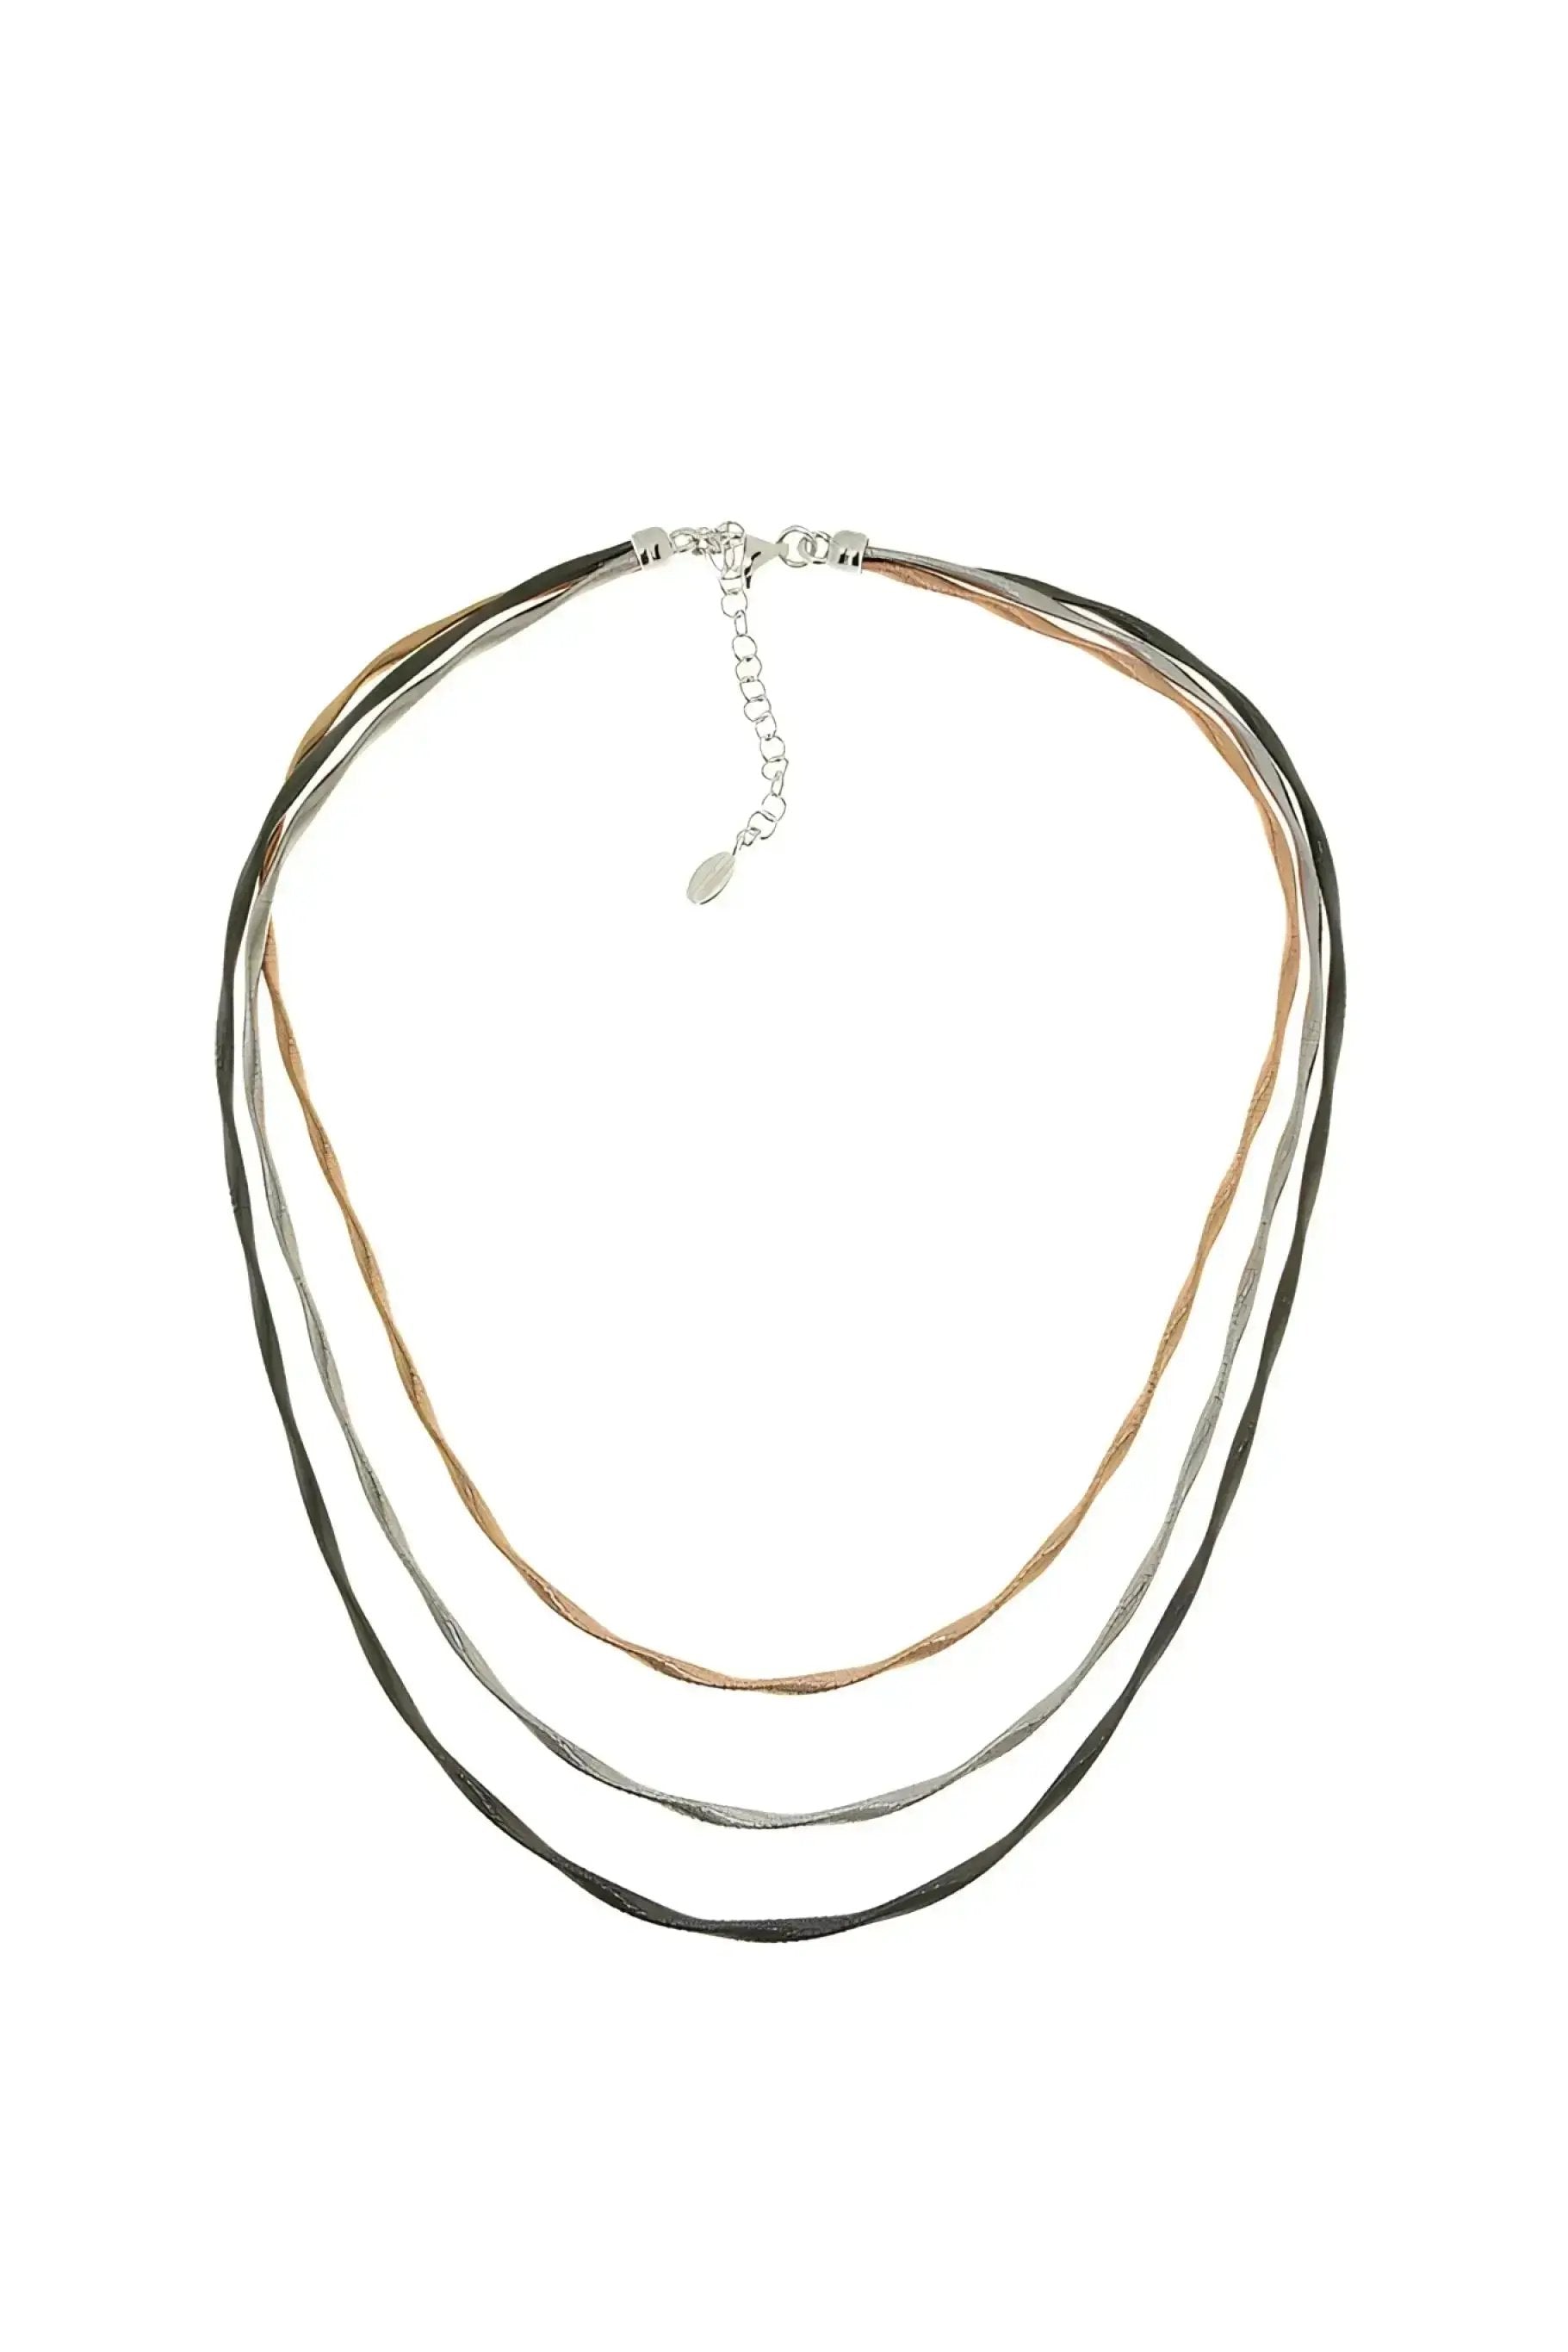 String 3 - collana in argento 925 3 fili con 3 colori